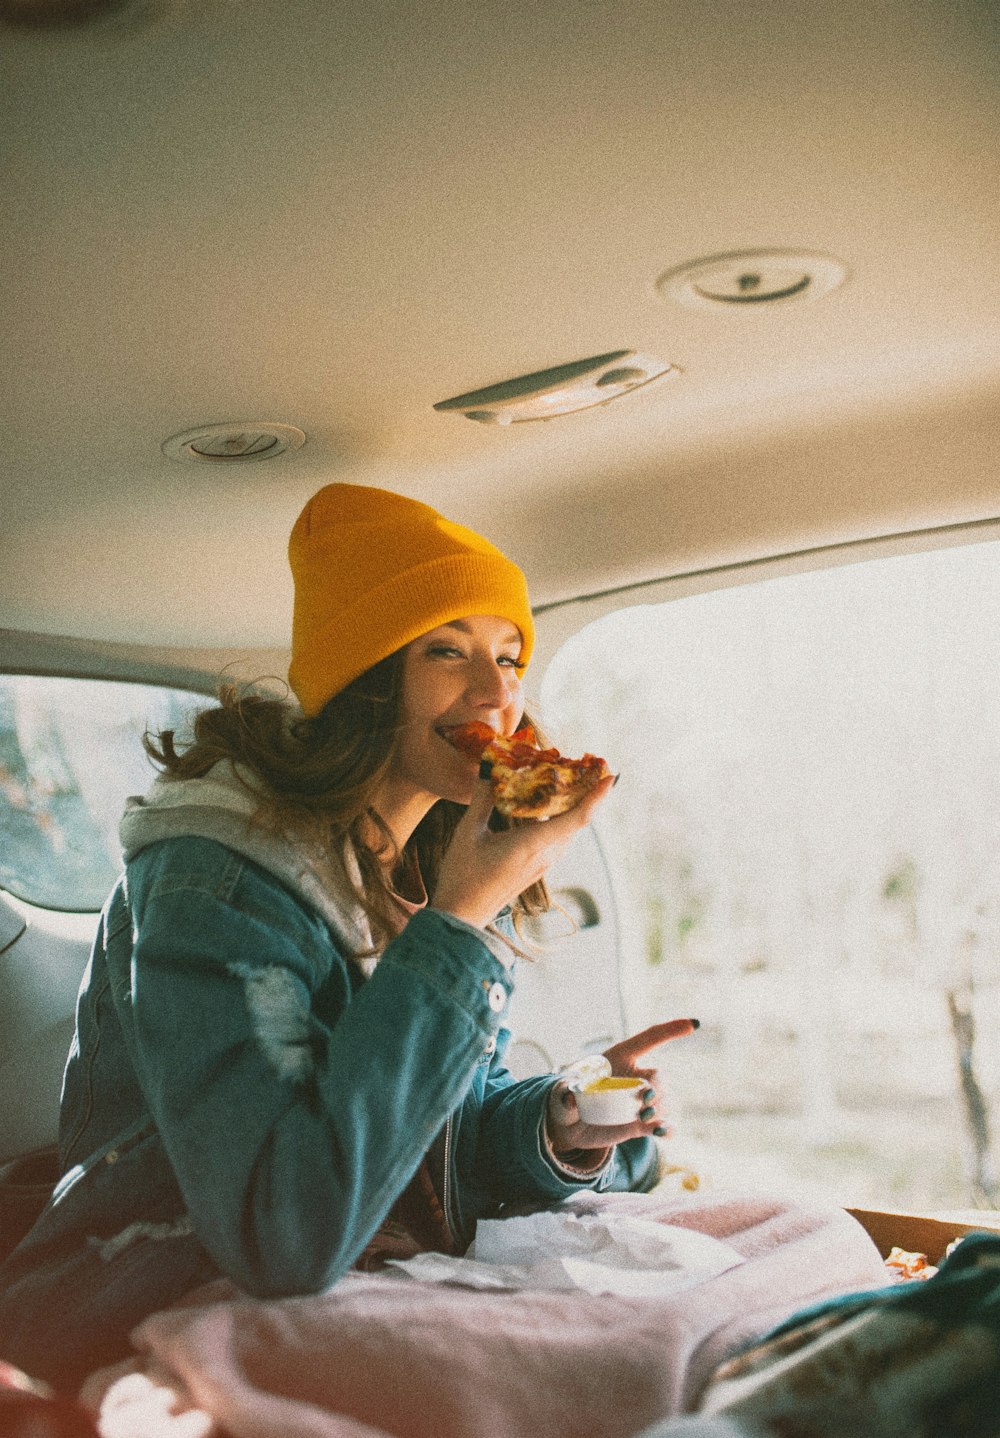 femme mangeant une pizza à l’intérieur d’un véhicule